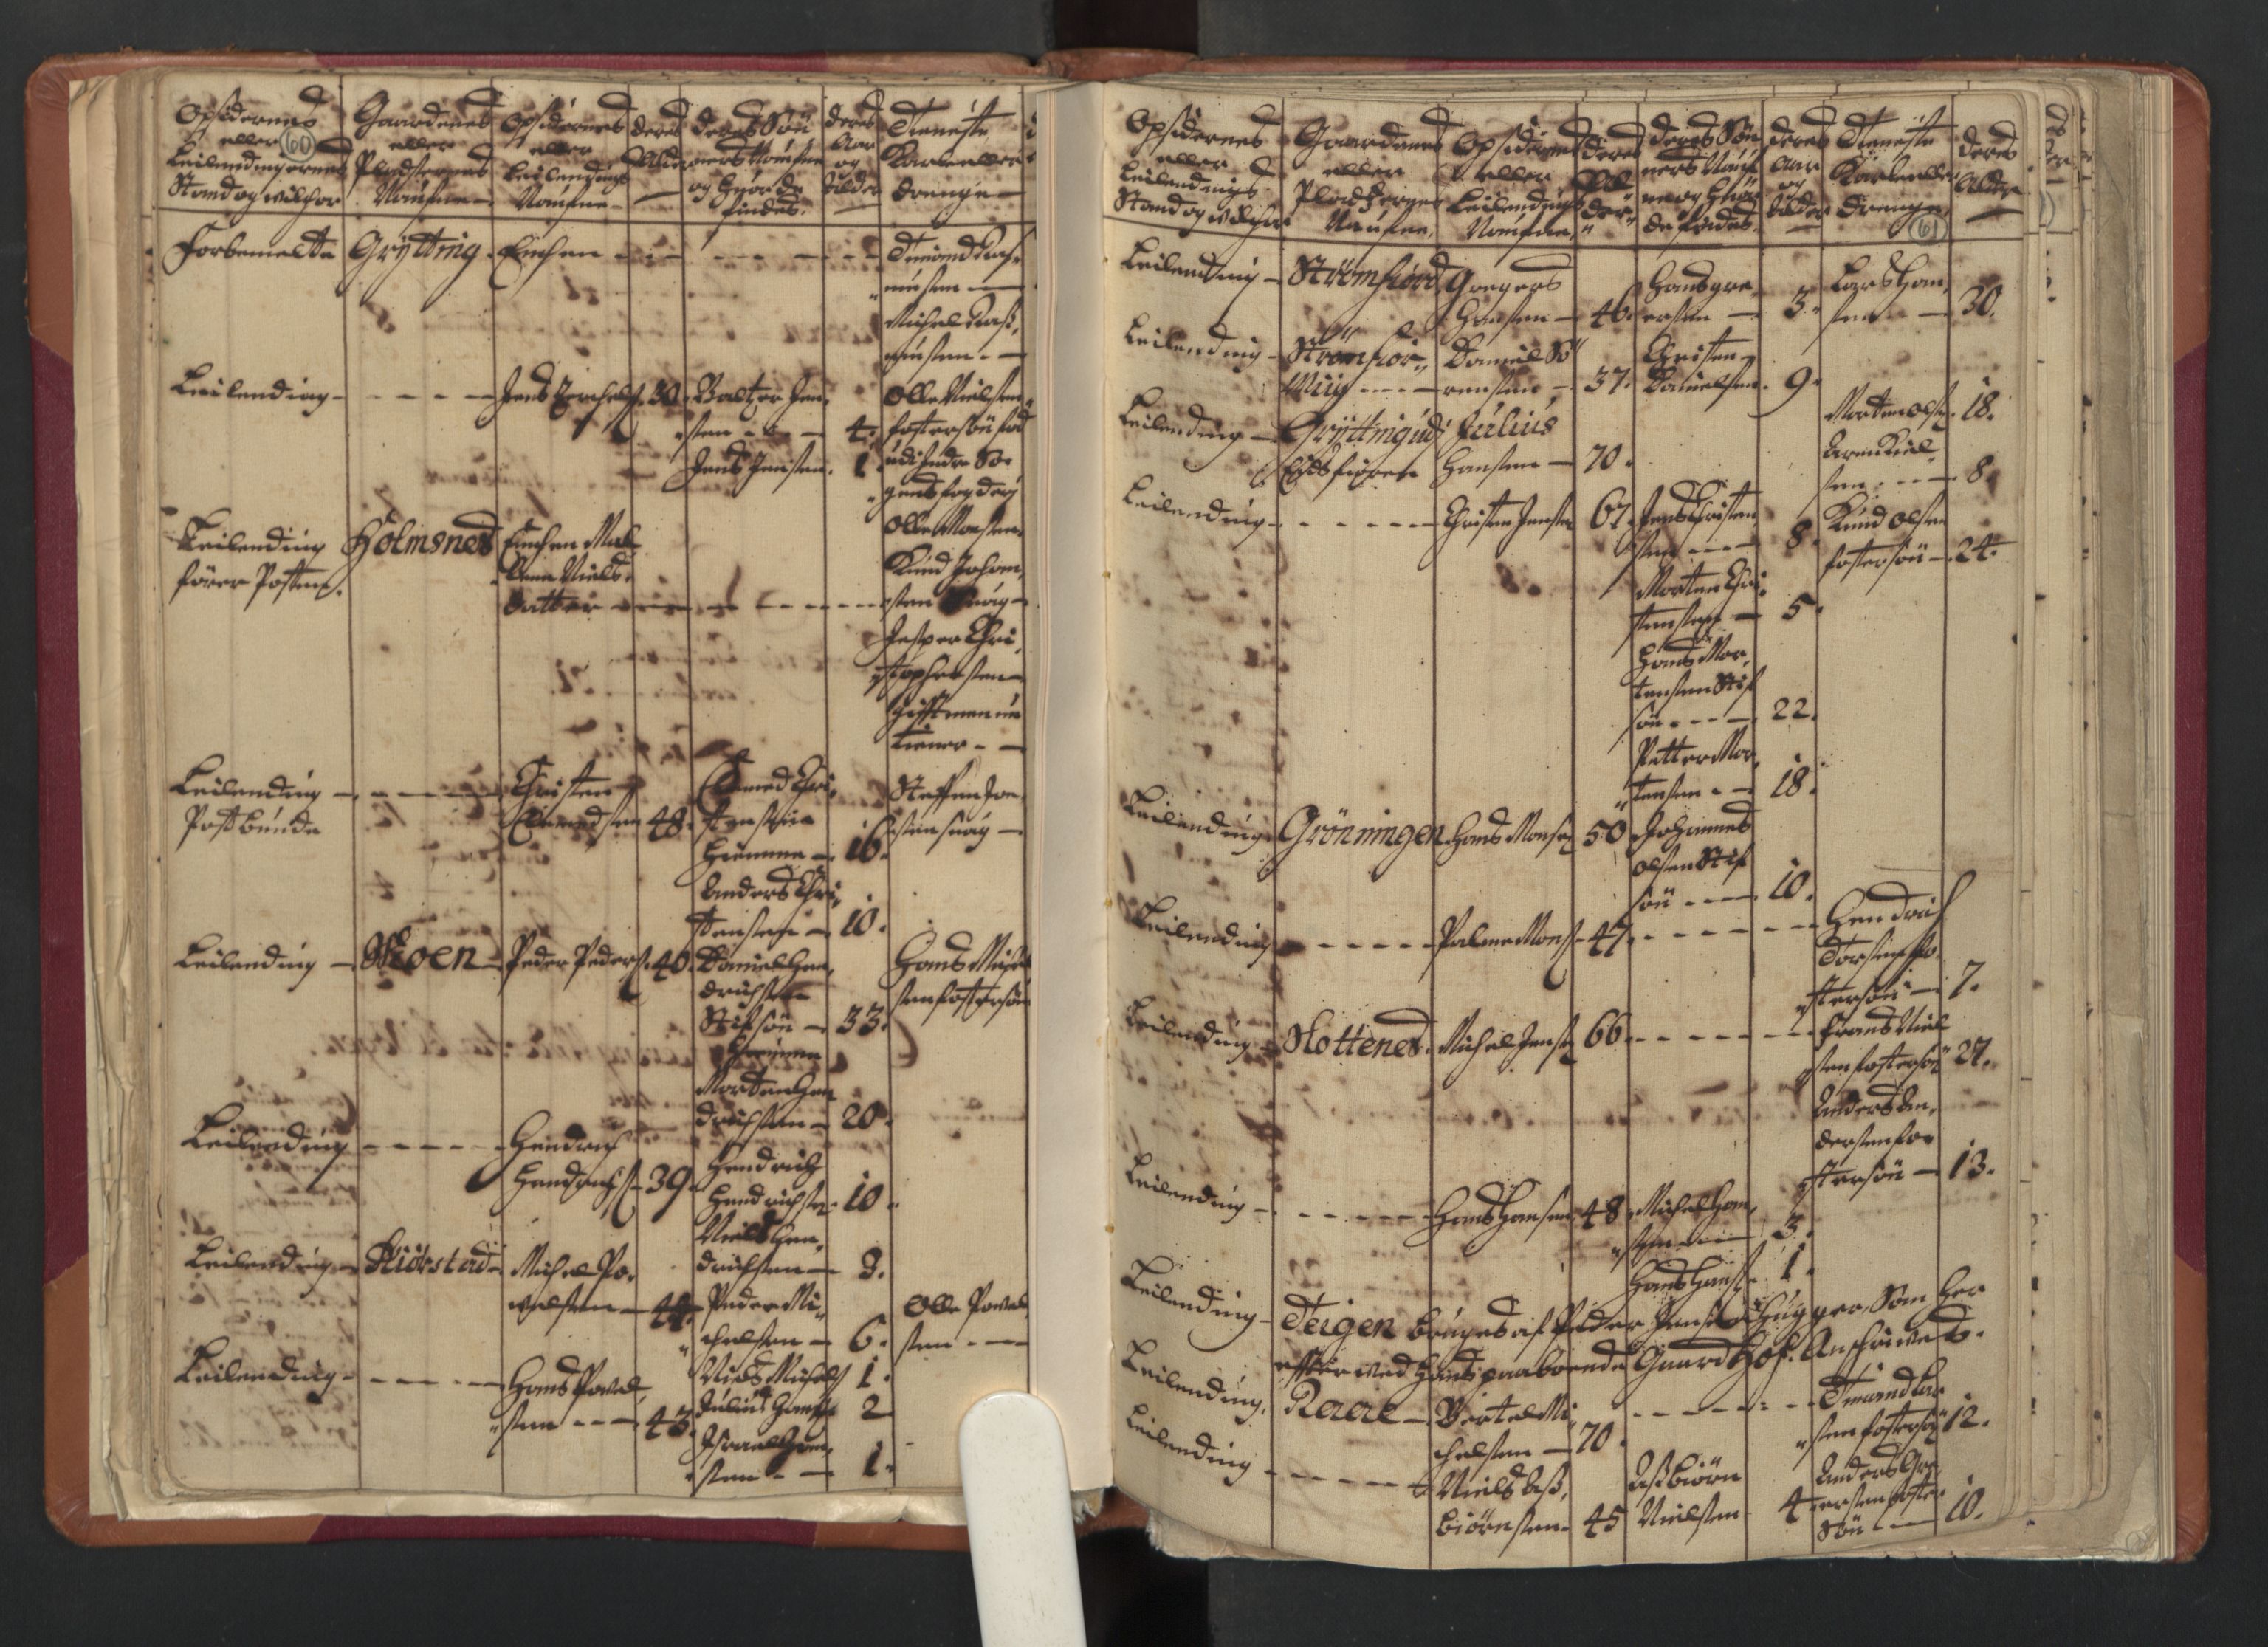 RA, Census (manntall) 1701, no. 18: Vesterålen, Andenes and Lofoten fogderi, 1701, p. 60-61